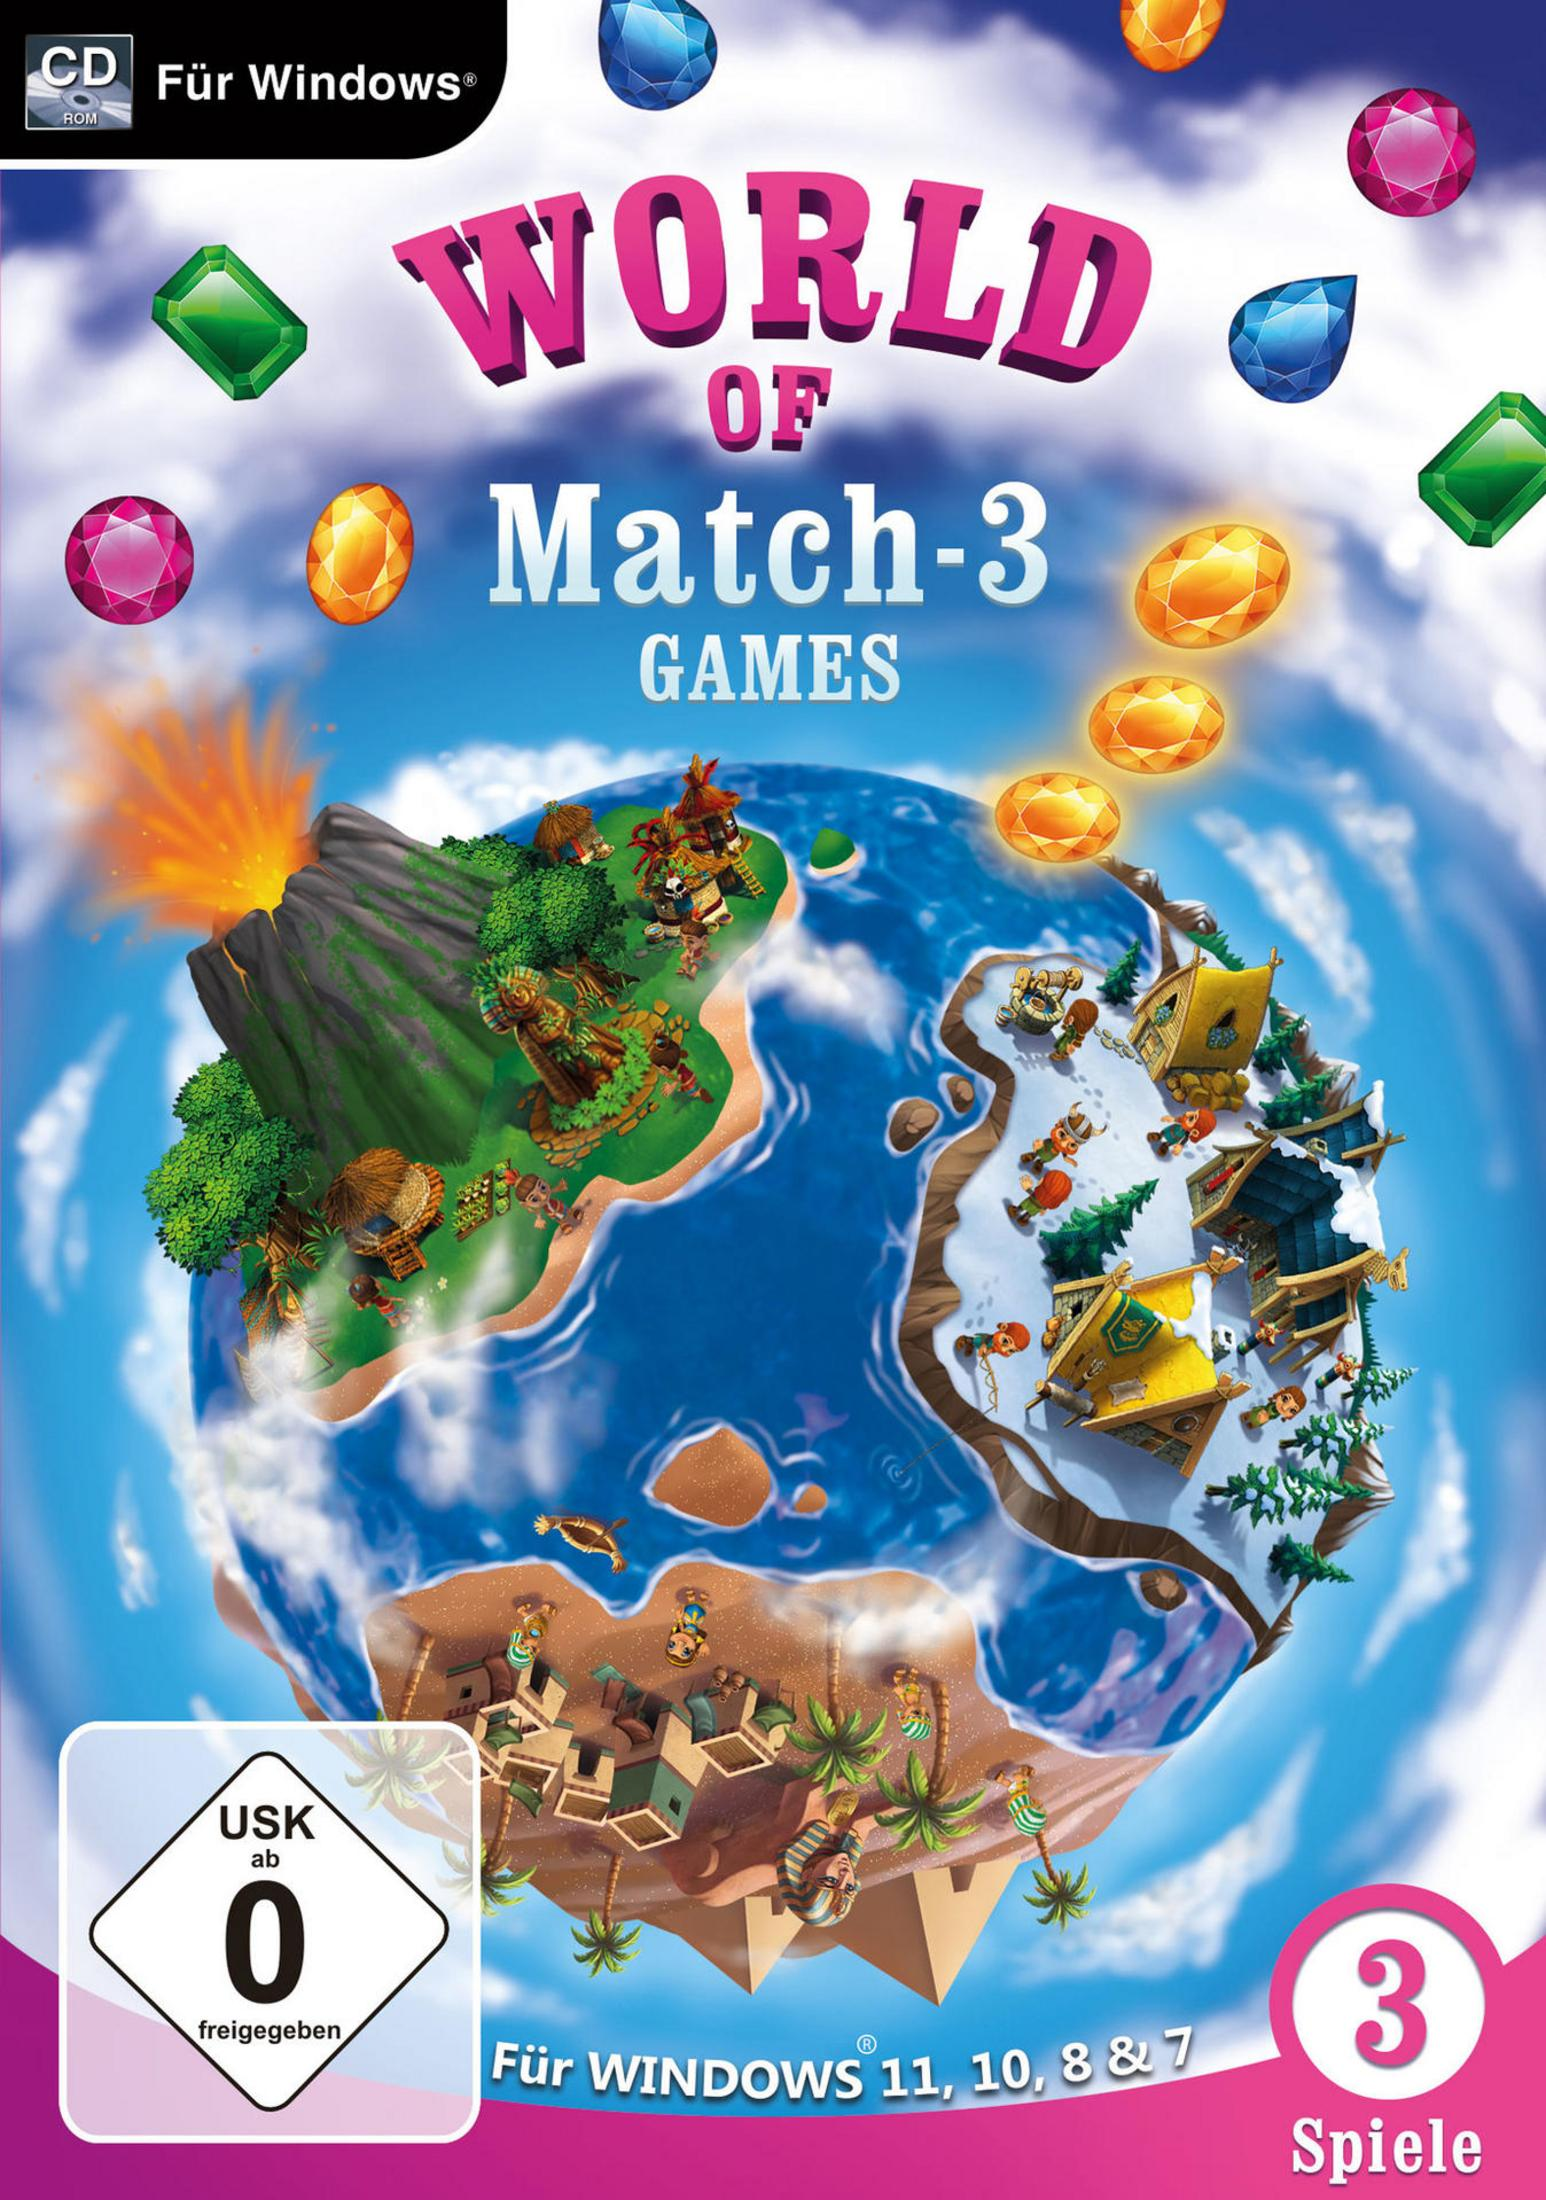 WORLD OF WINDOWS11&10 [PC] 3 MATCH FÜR - GAMES